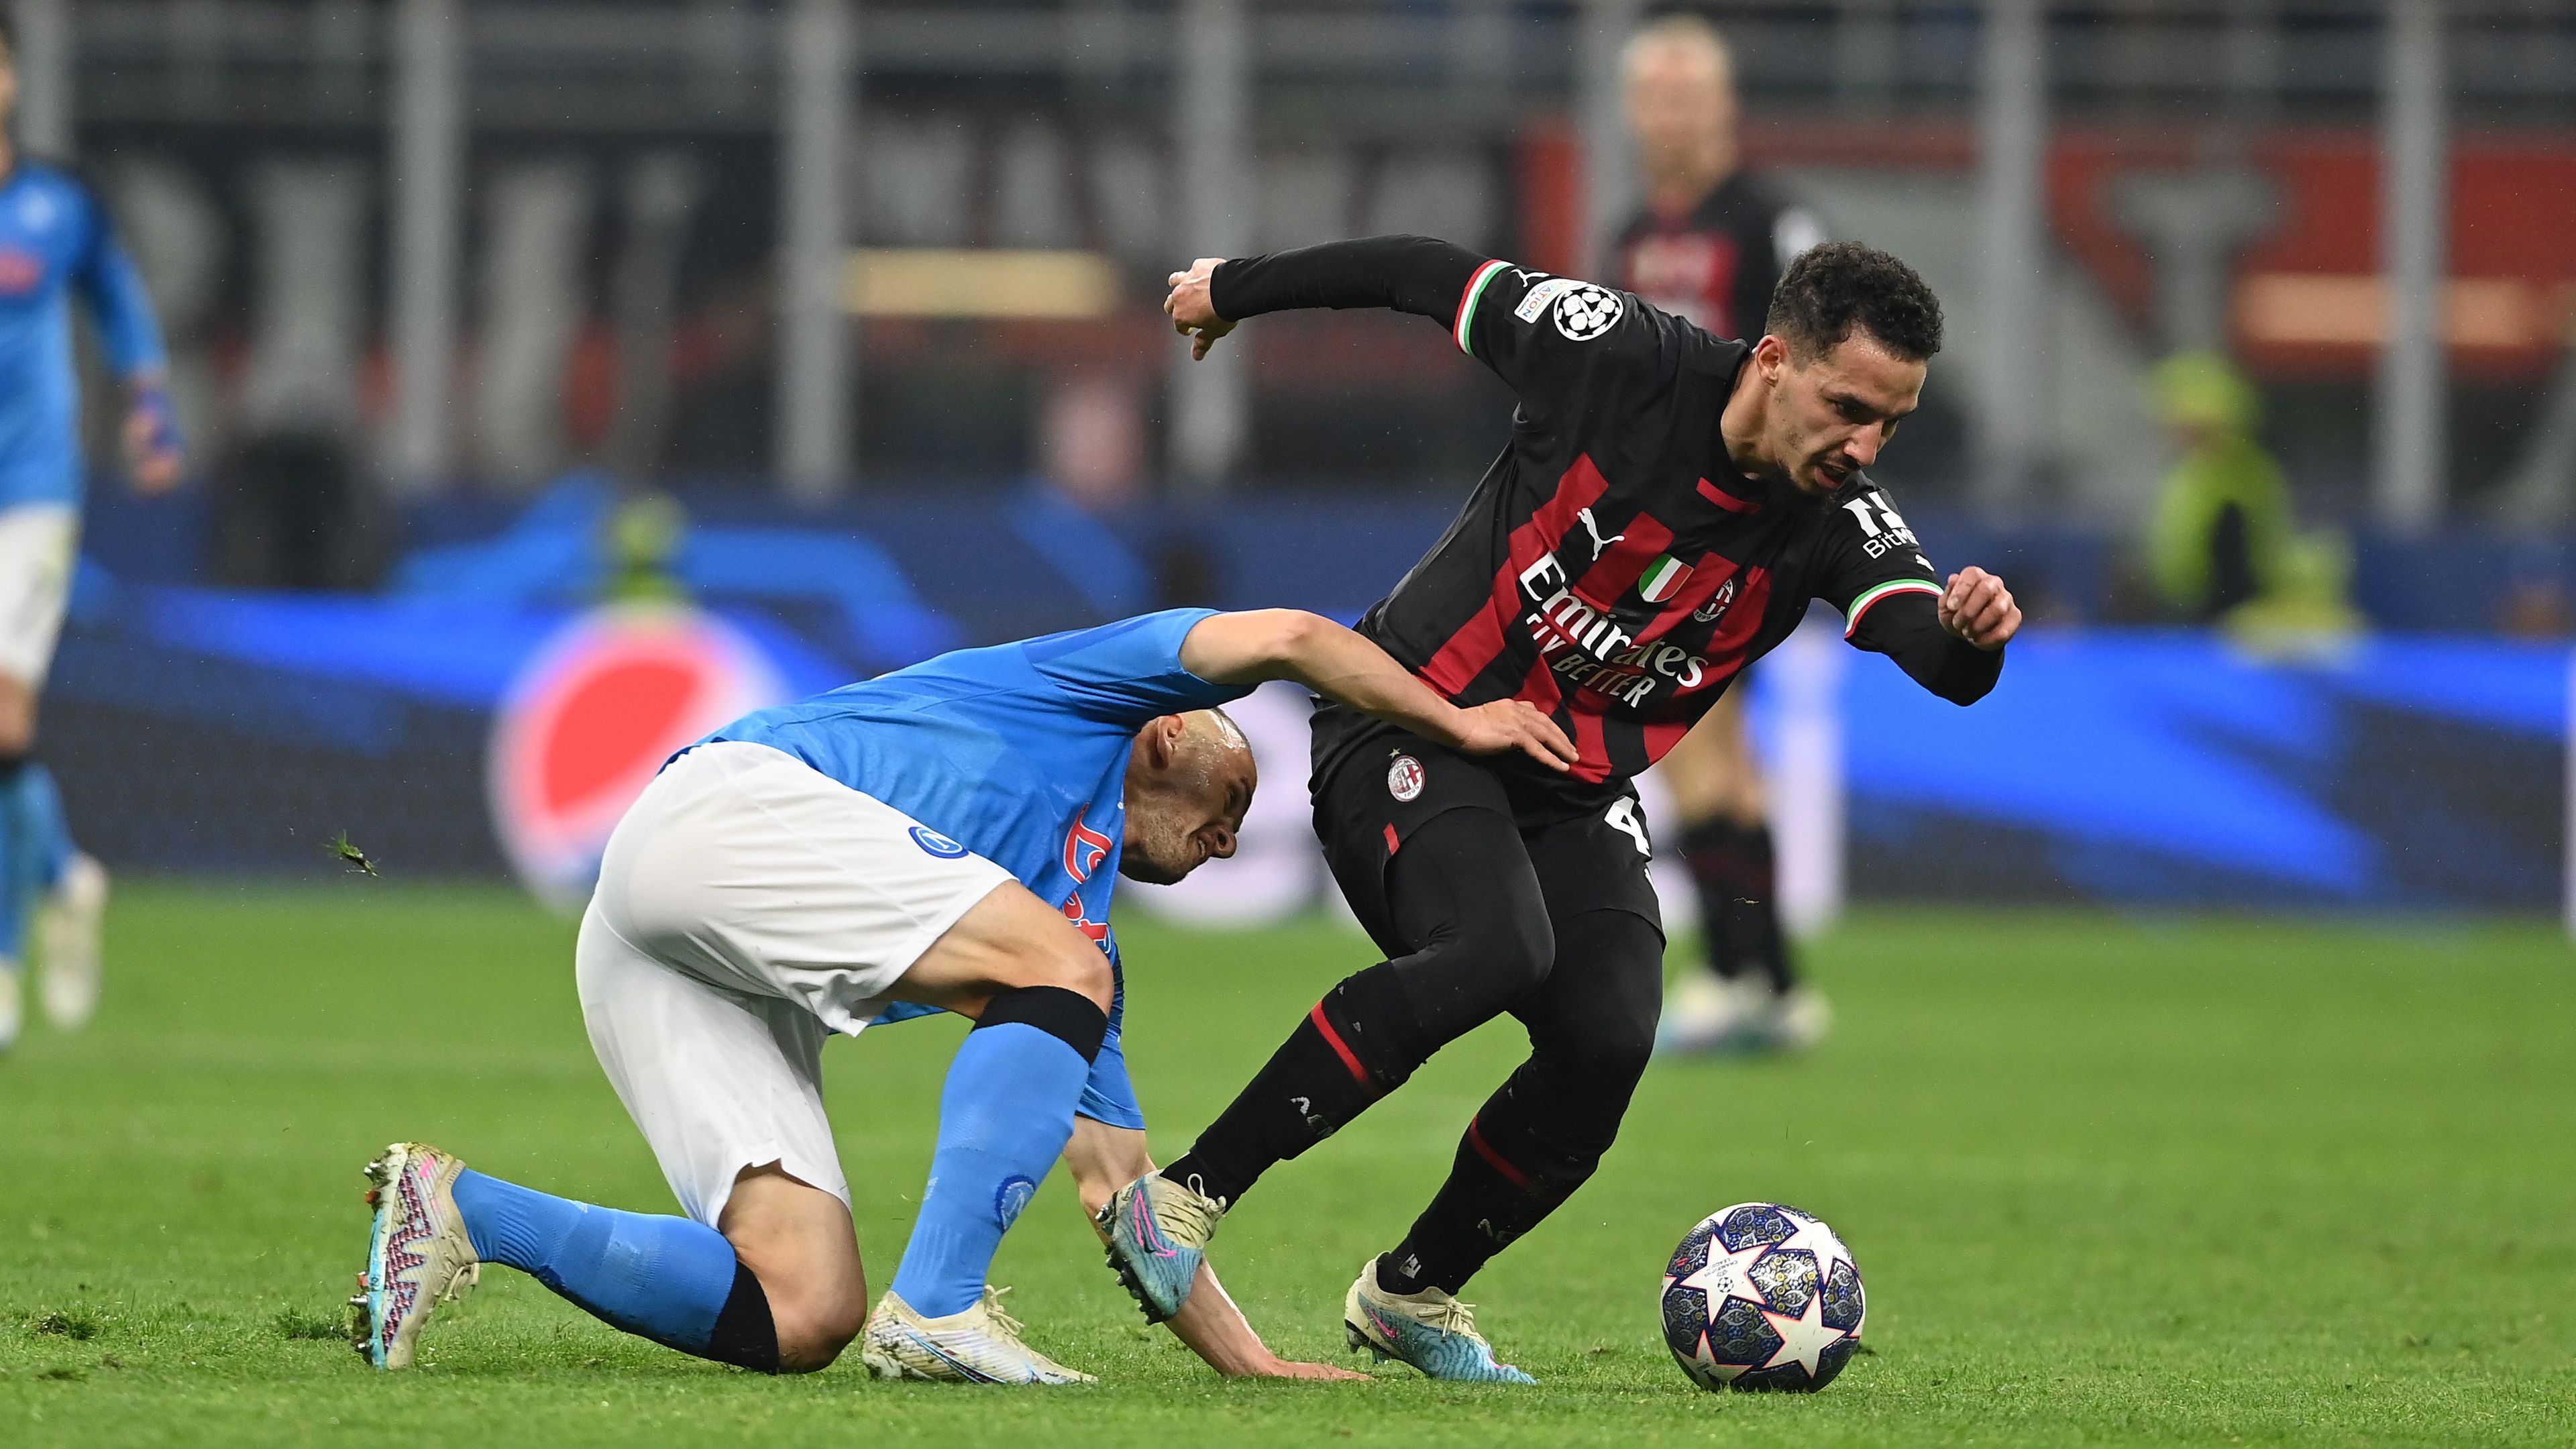 A Napoli csak helyzetekig jutott, a Milan várja előnyből a  BL-visszavágót – videóval